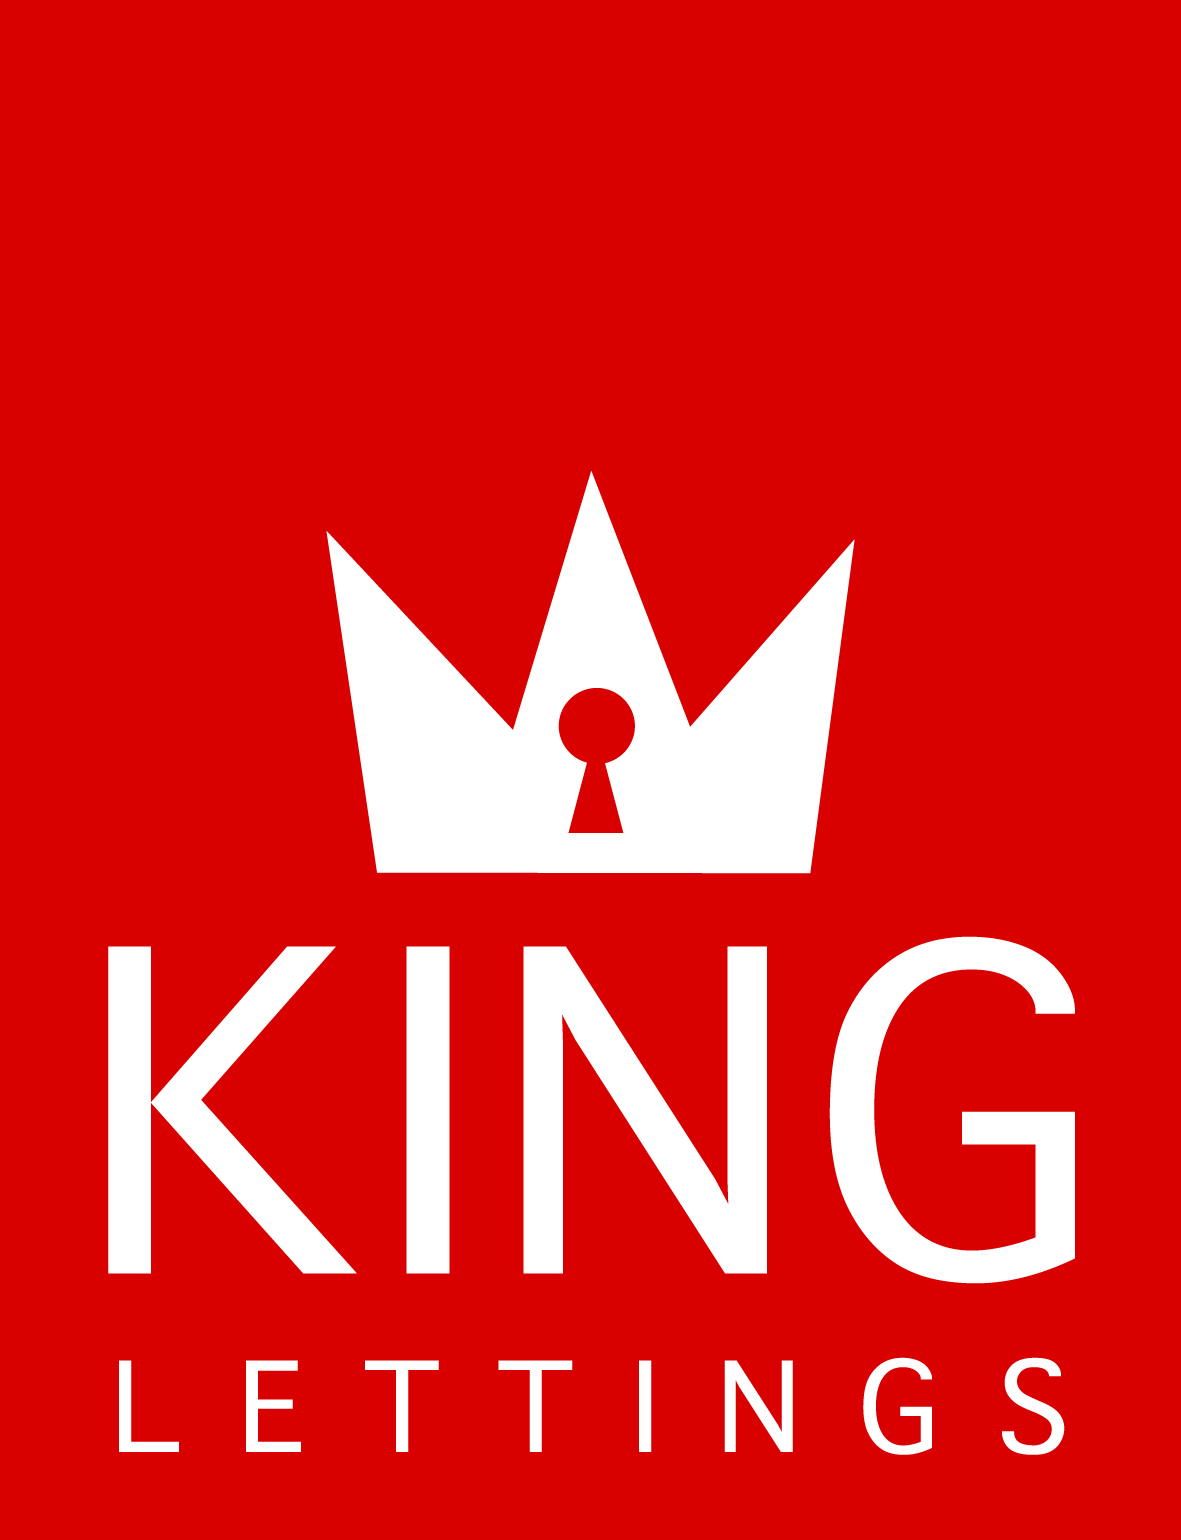 King Lettings